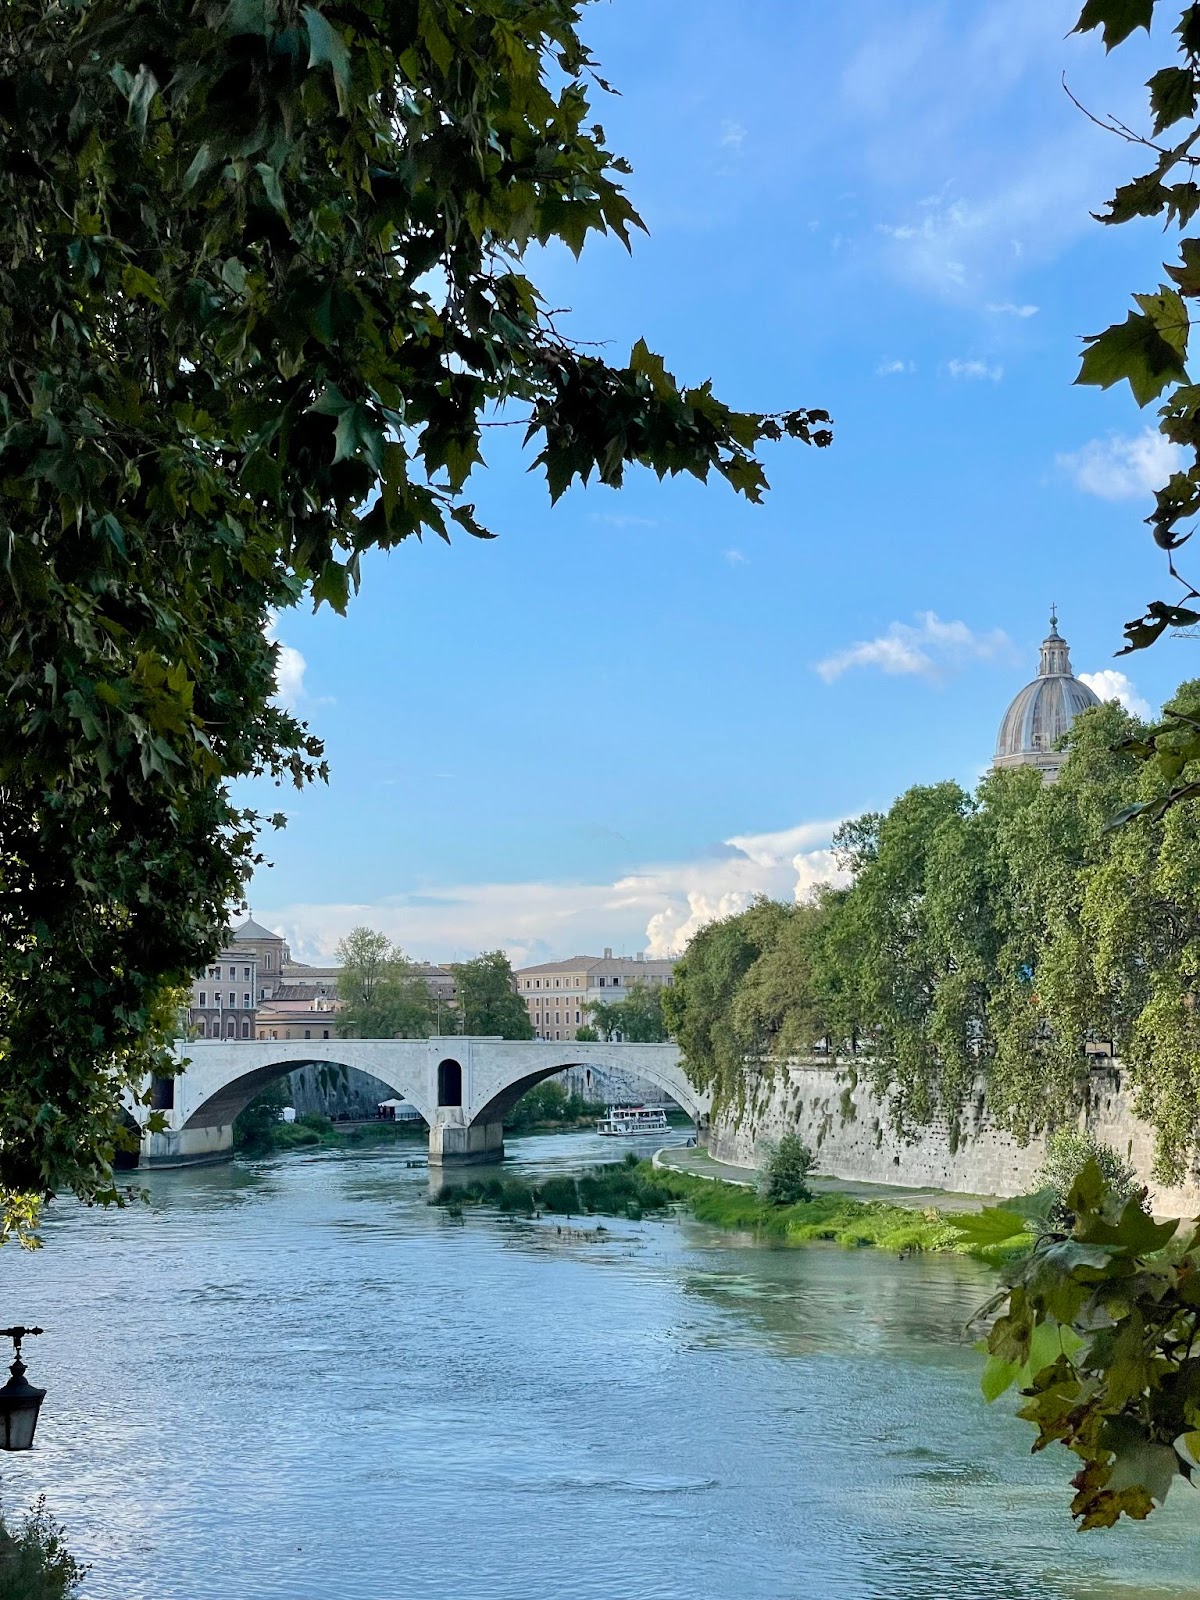 Instagrammable spots in Rome